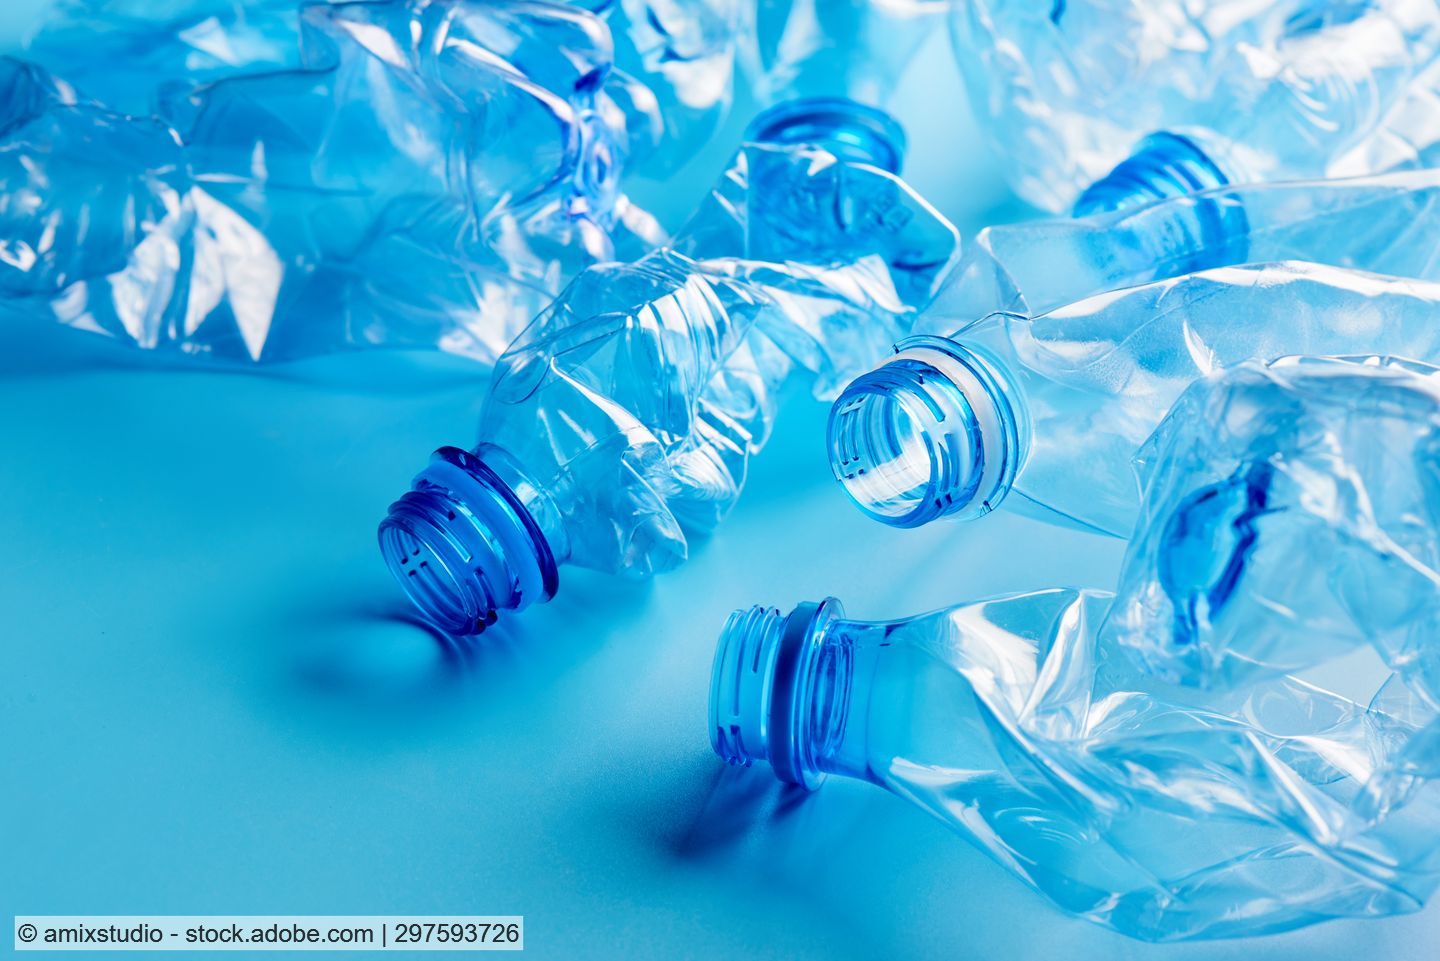 Crushed PET beverage bottles against a light blue background